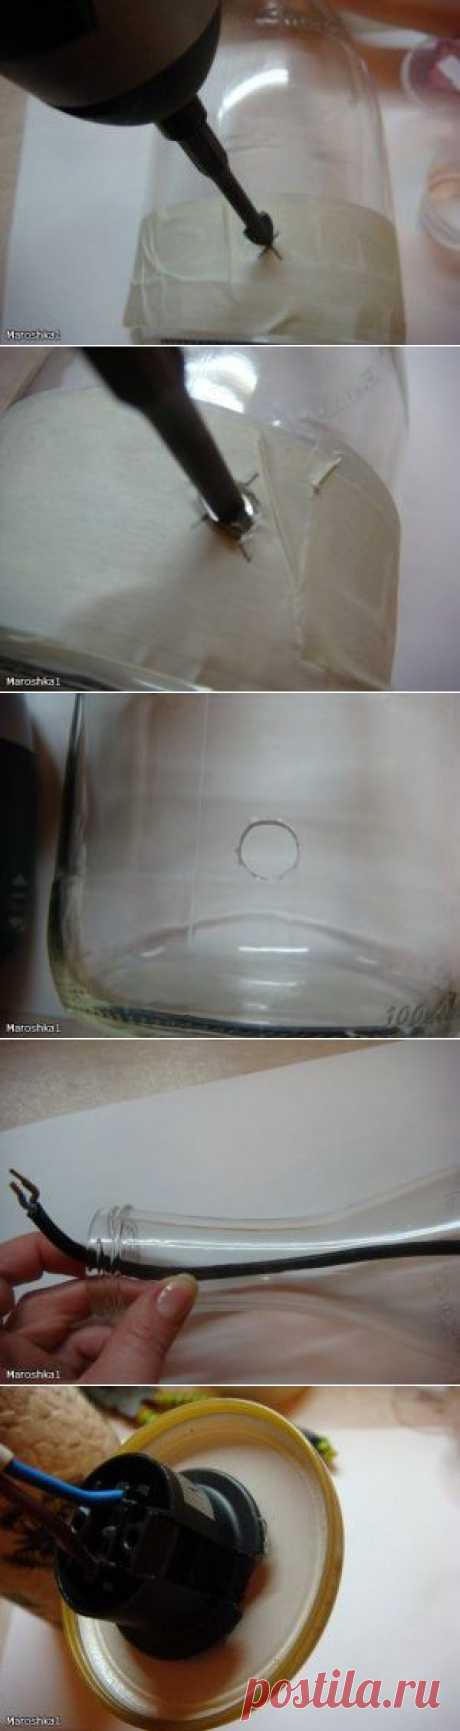 Как сделать основание для лампы из стеклянной бутылки